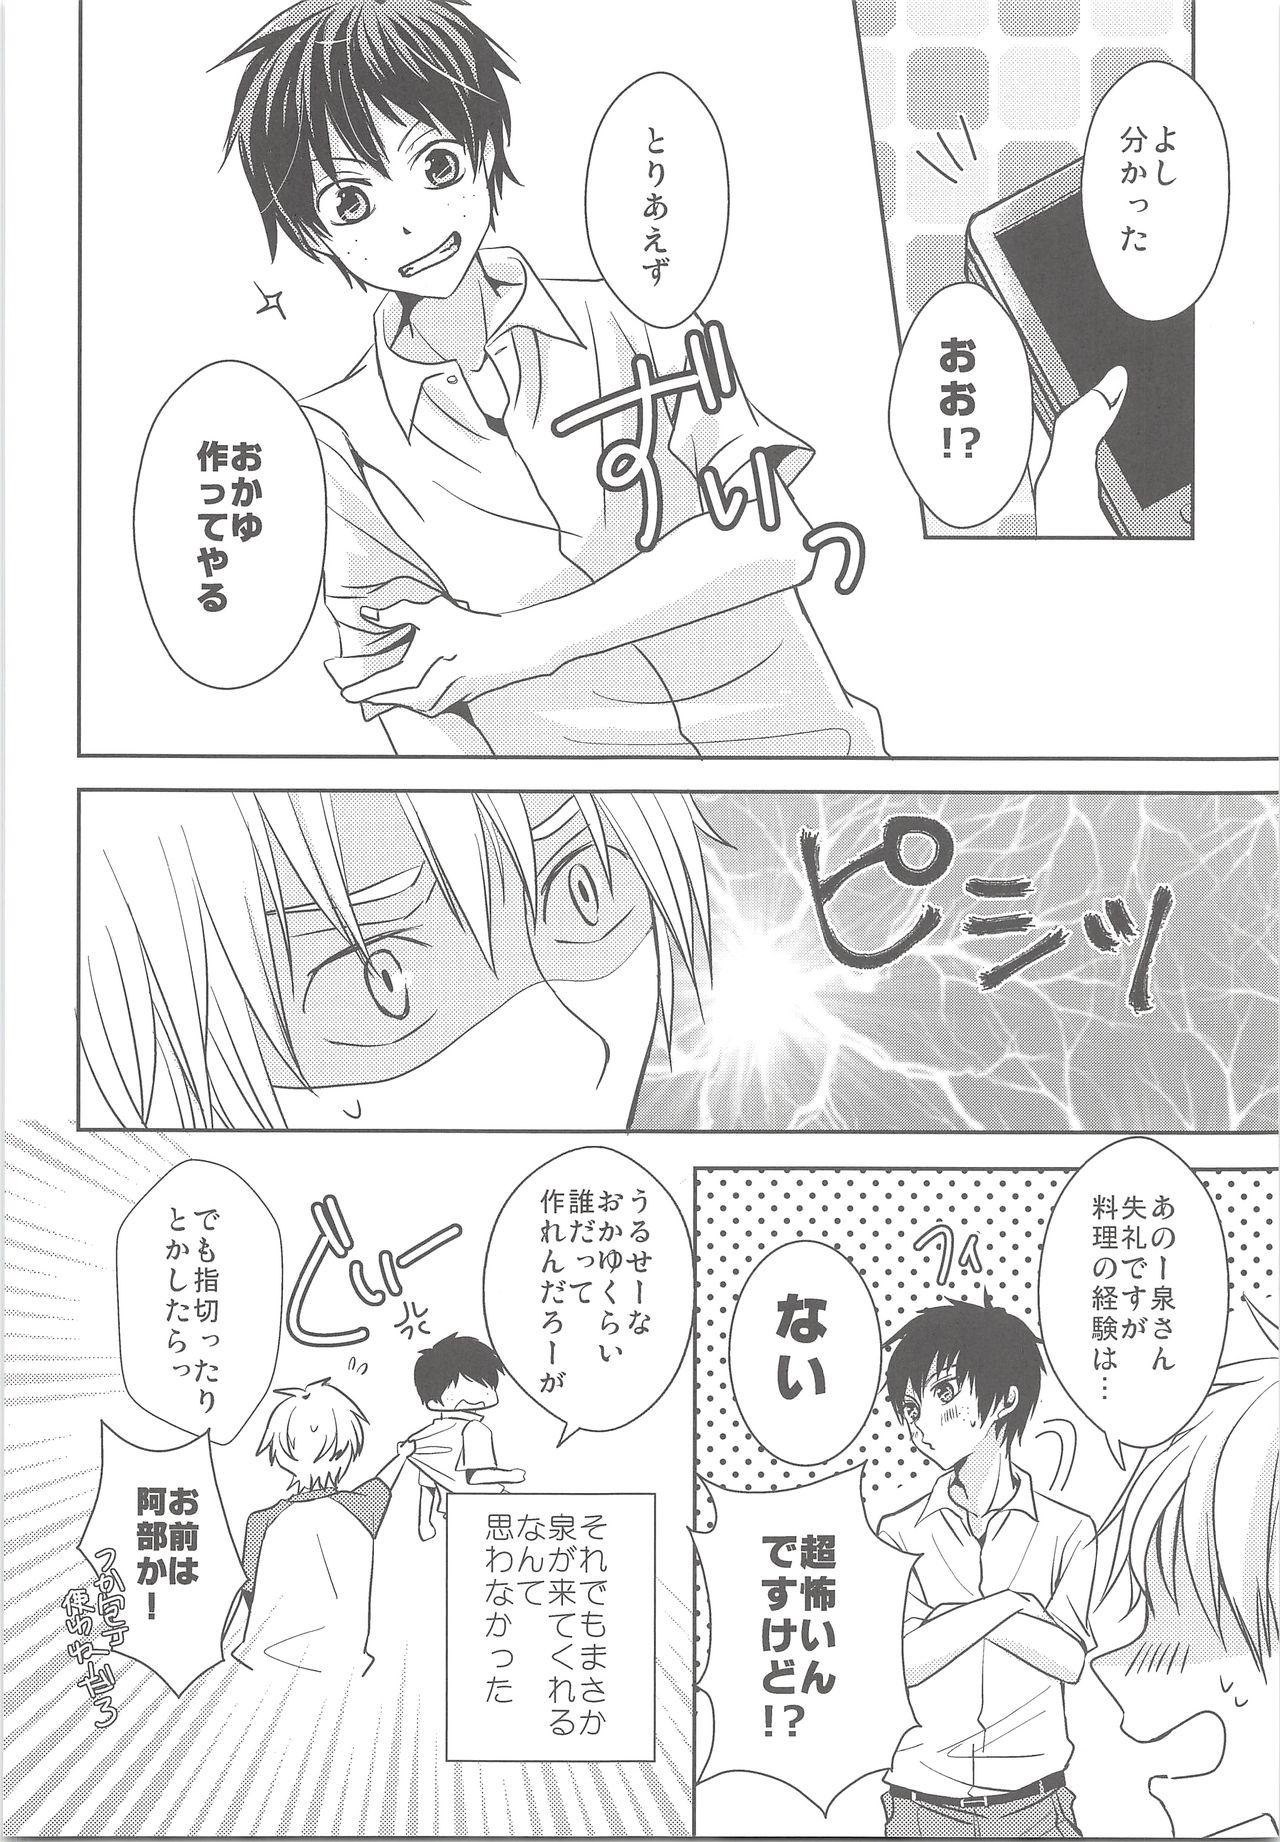 Highschool Natsu Kaze wa Baka ga Hiku! - Ookiku furikabutte Thylinh - Page 7